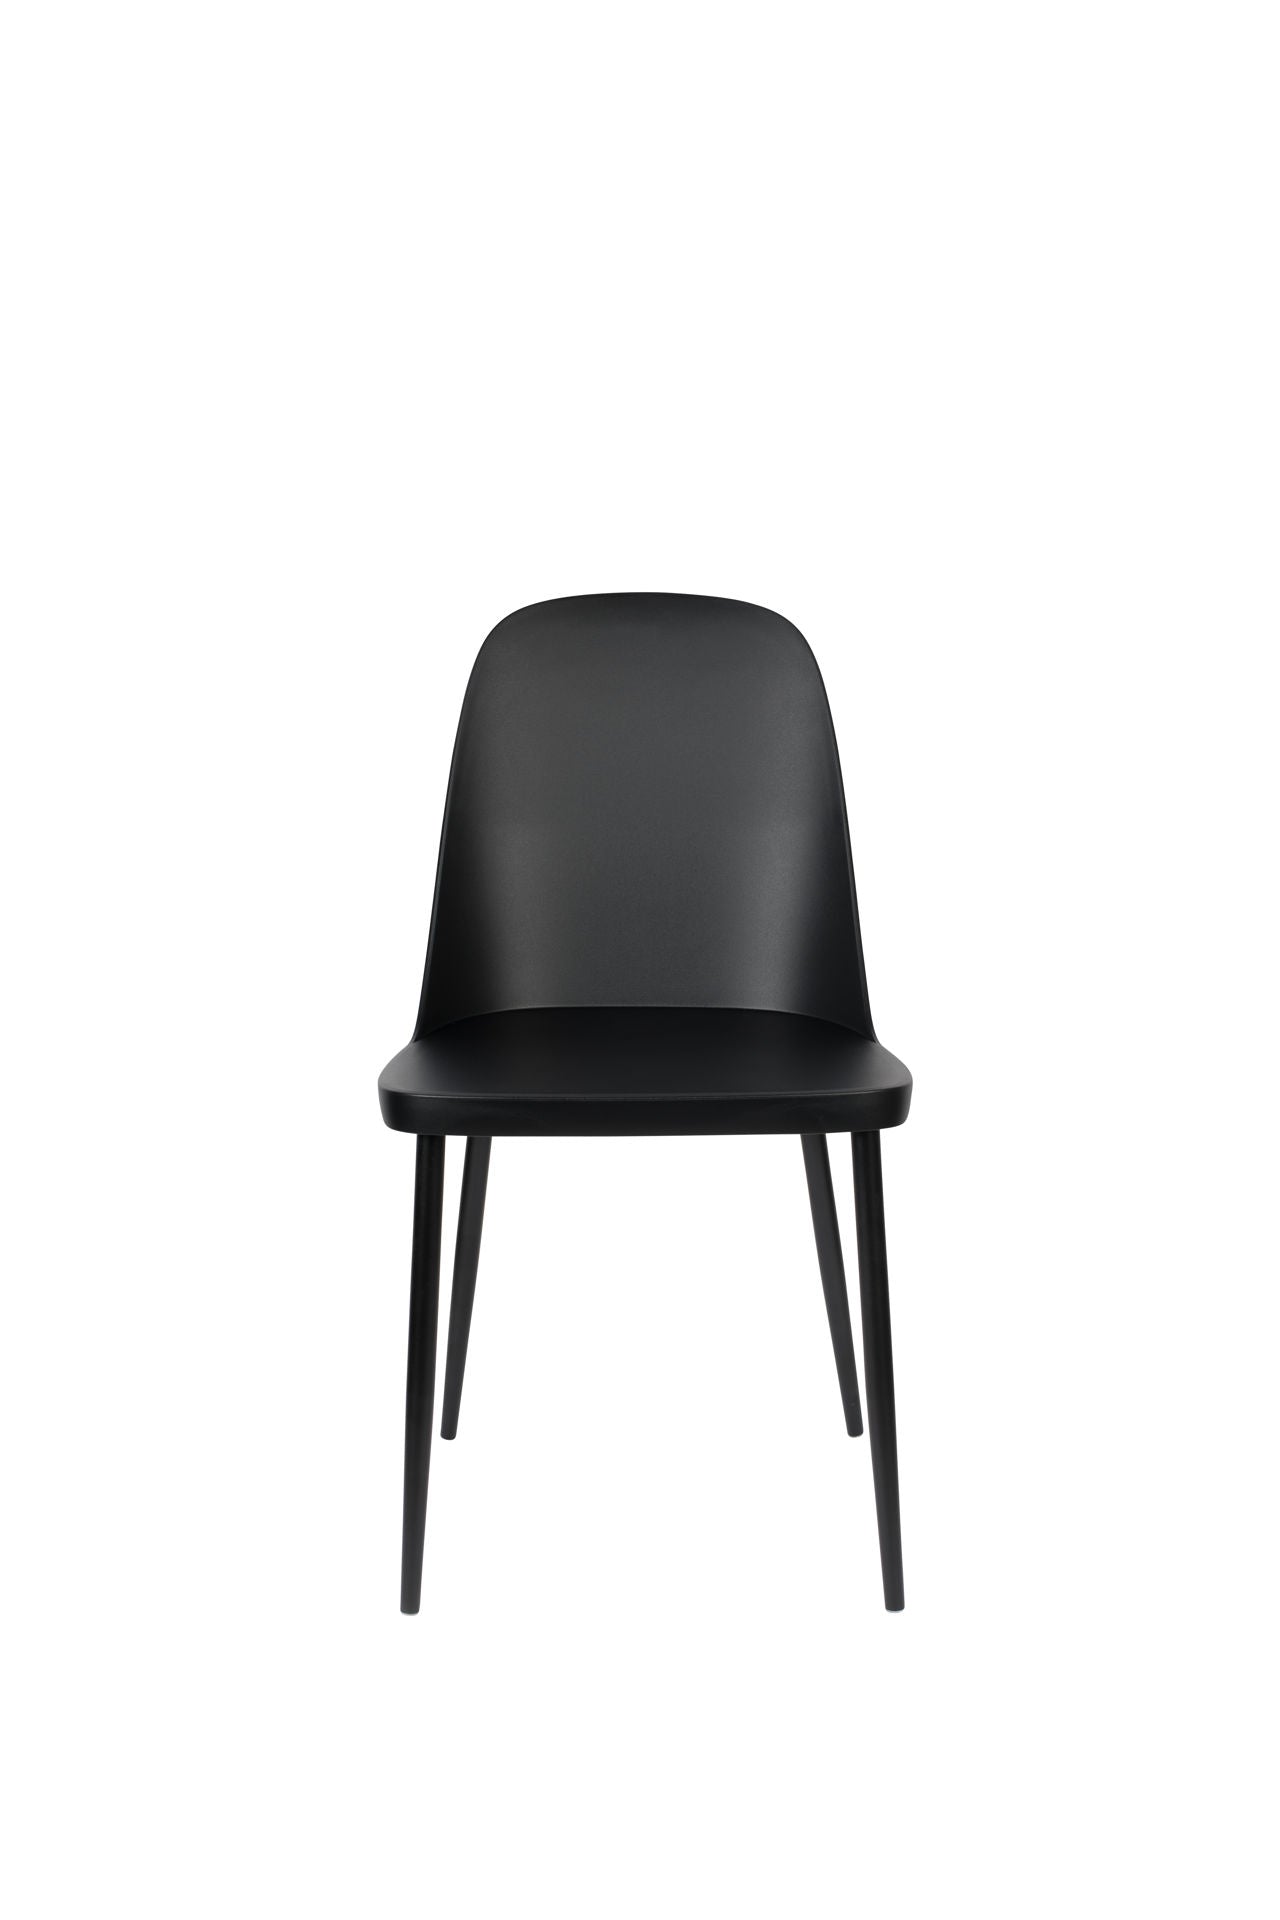 Nancy's Incline Village Chair - Scandinave - Noir - Polypropylène, Acier - 53,5 cm x 46 cm x 85 cm